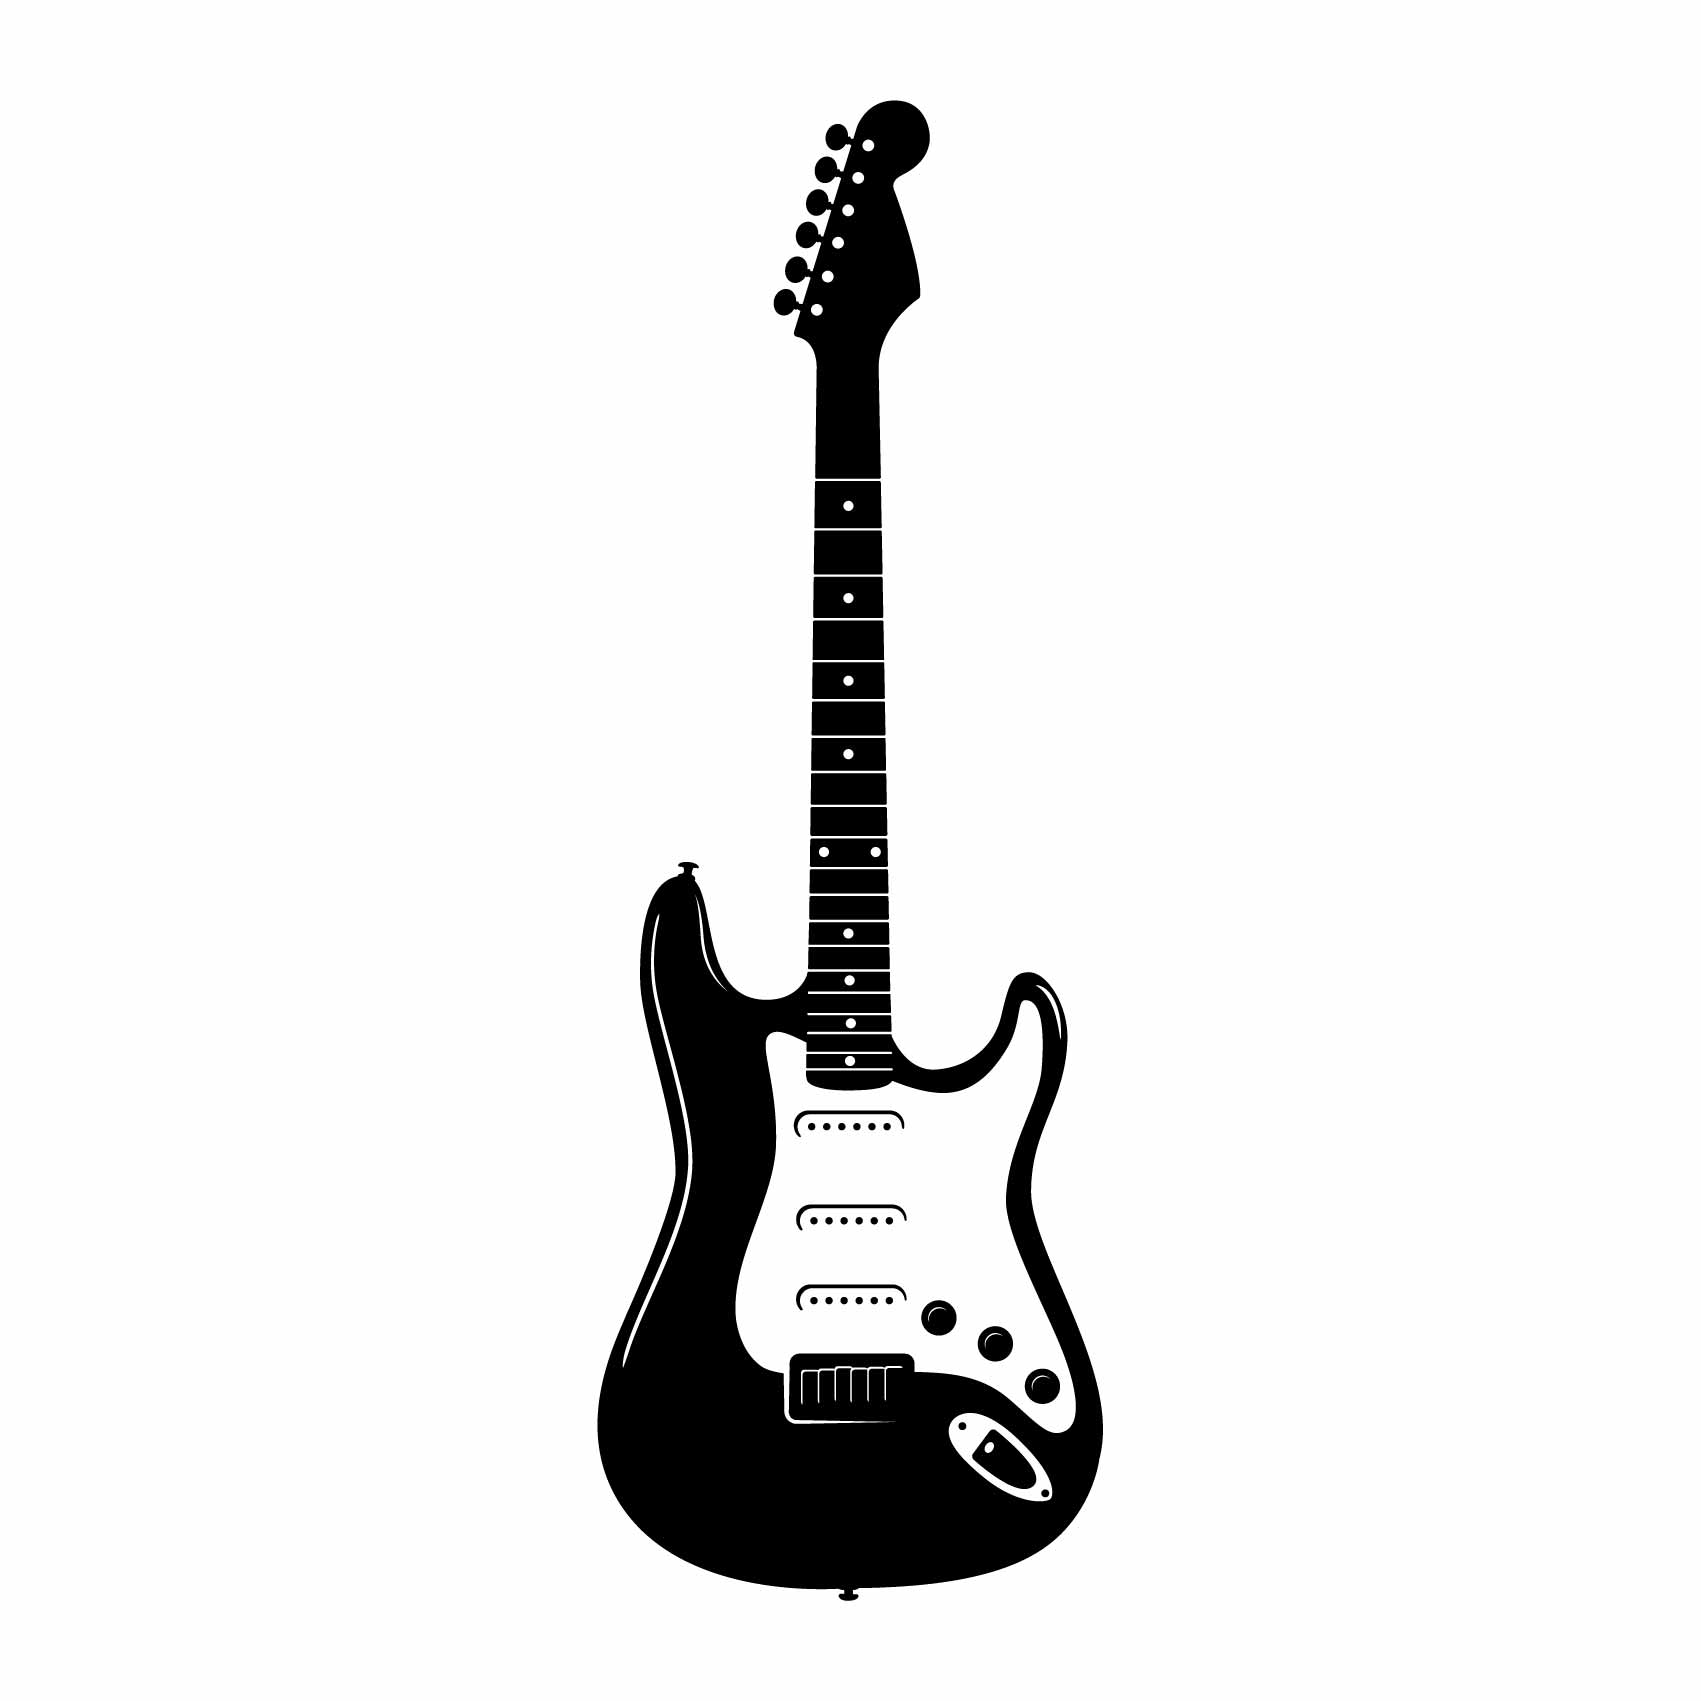 Stickers Guitare electrique - Autocollant muraux et deco